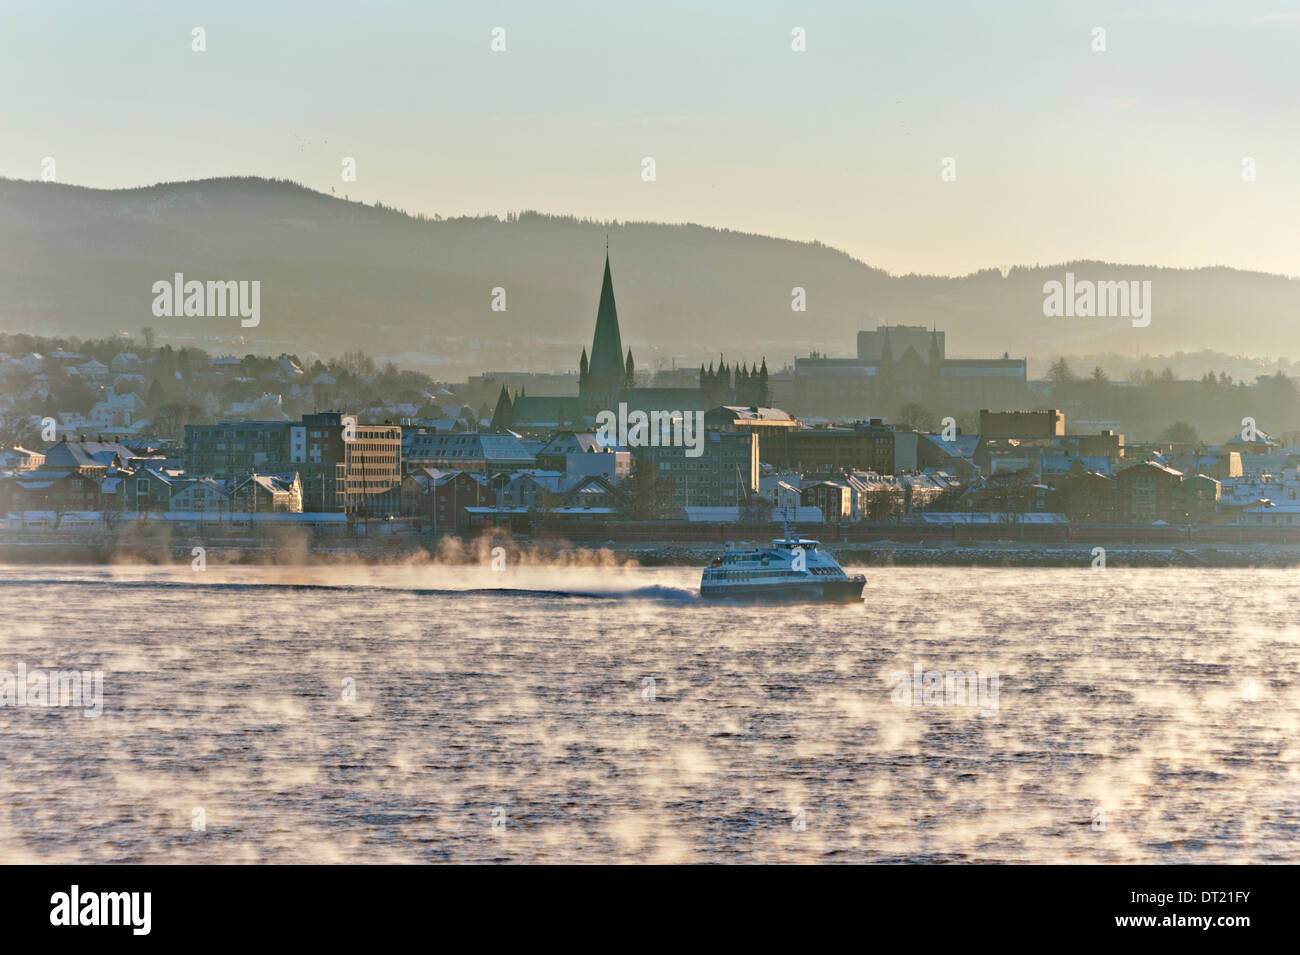 La brume s'élève de la mer, comme le soleil d'hiver touche l'eau à la ville de Trondheim, Norvège Banque D'Images